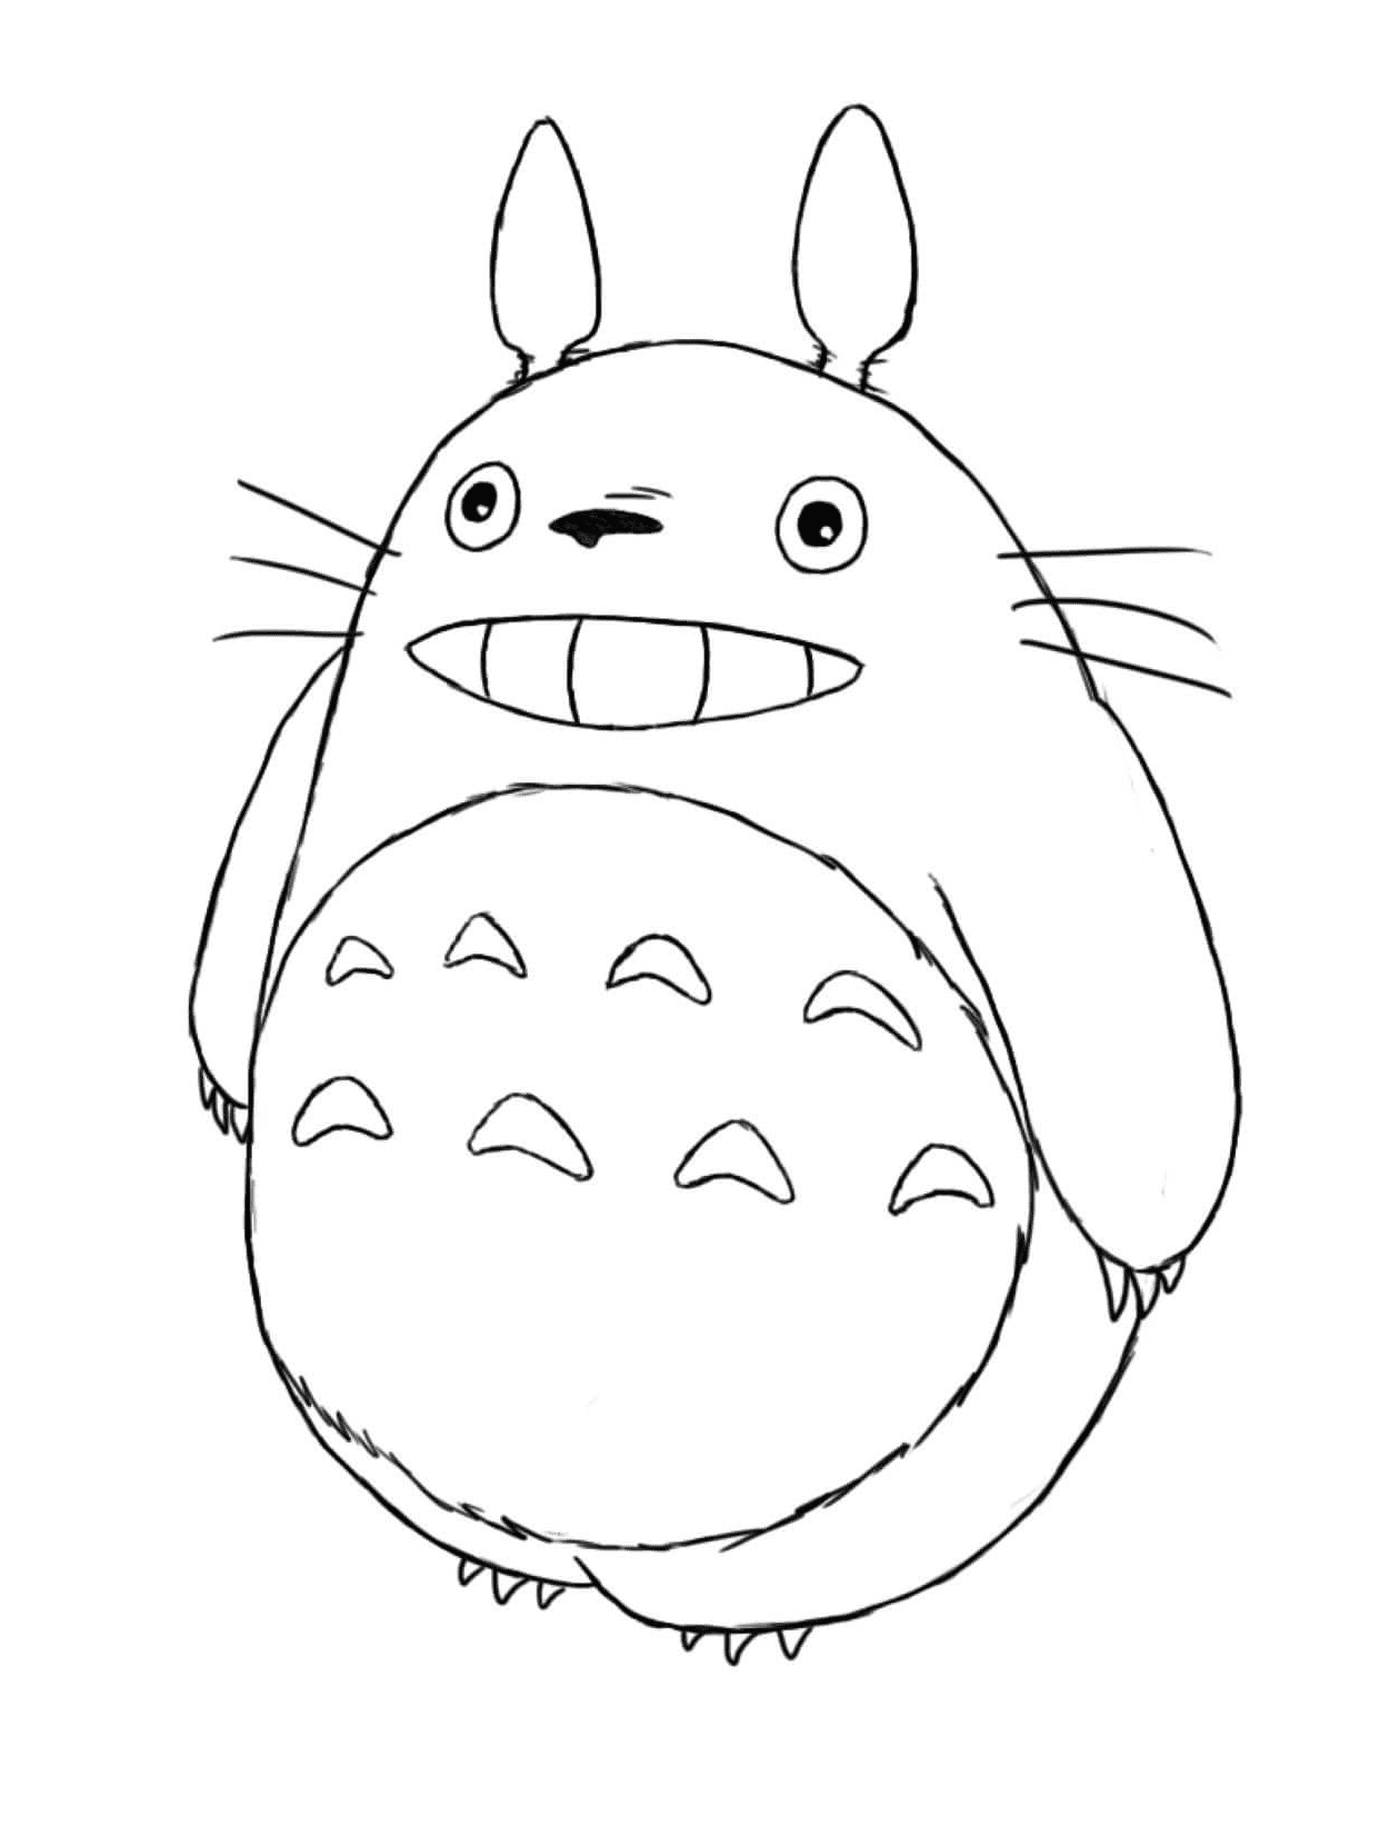  Totoro mit einem großen Lächeln 